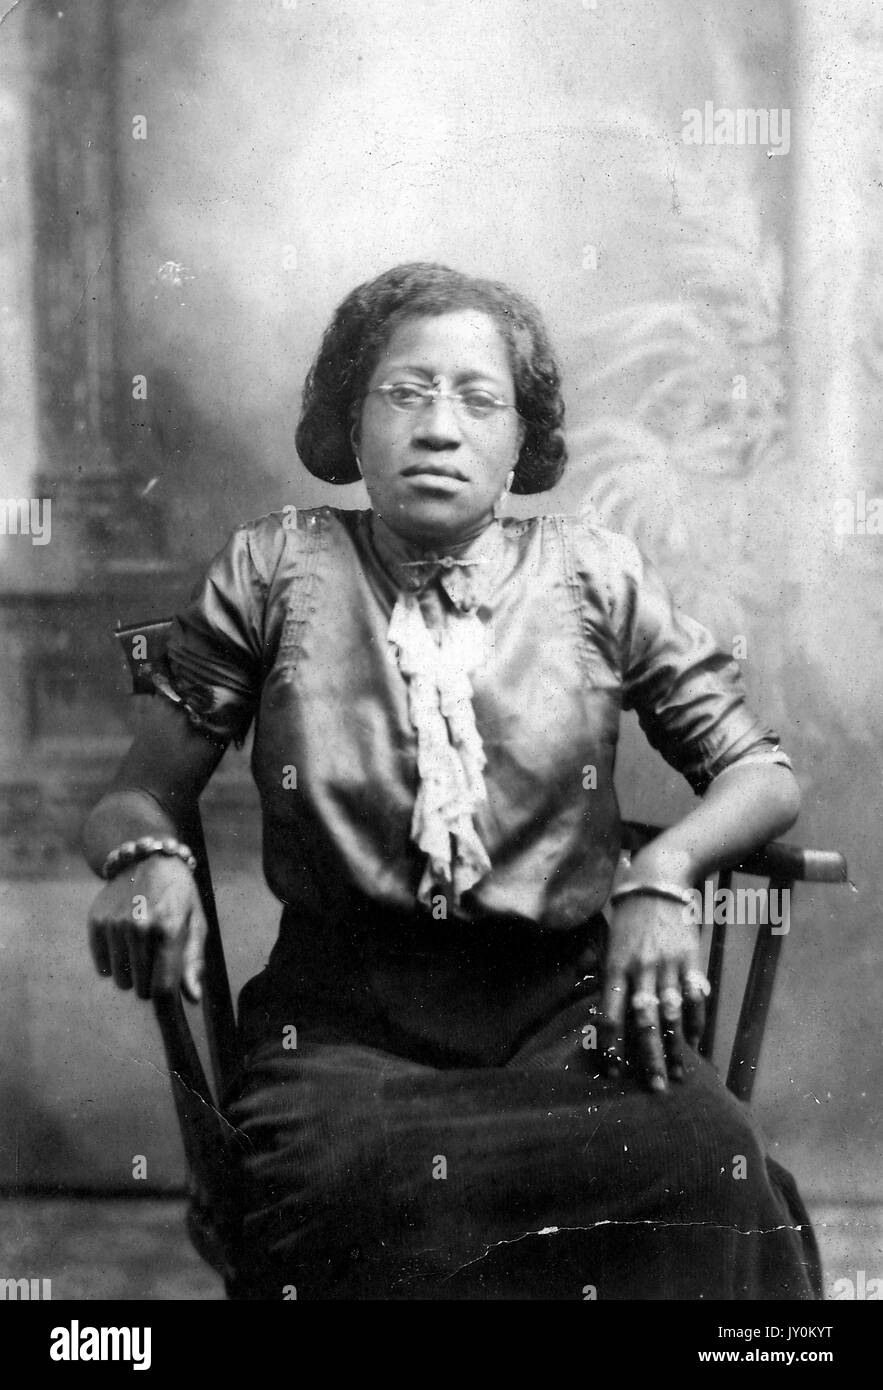 Trois quarts de longueur portrait assis de femme afro-américaine mature, portant un chemisier clair, jupe sombre, bijoux et lunettes, expression neutre, 1915. Banque D'Images